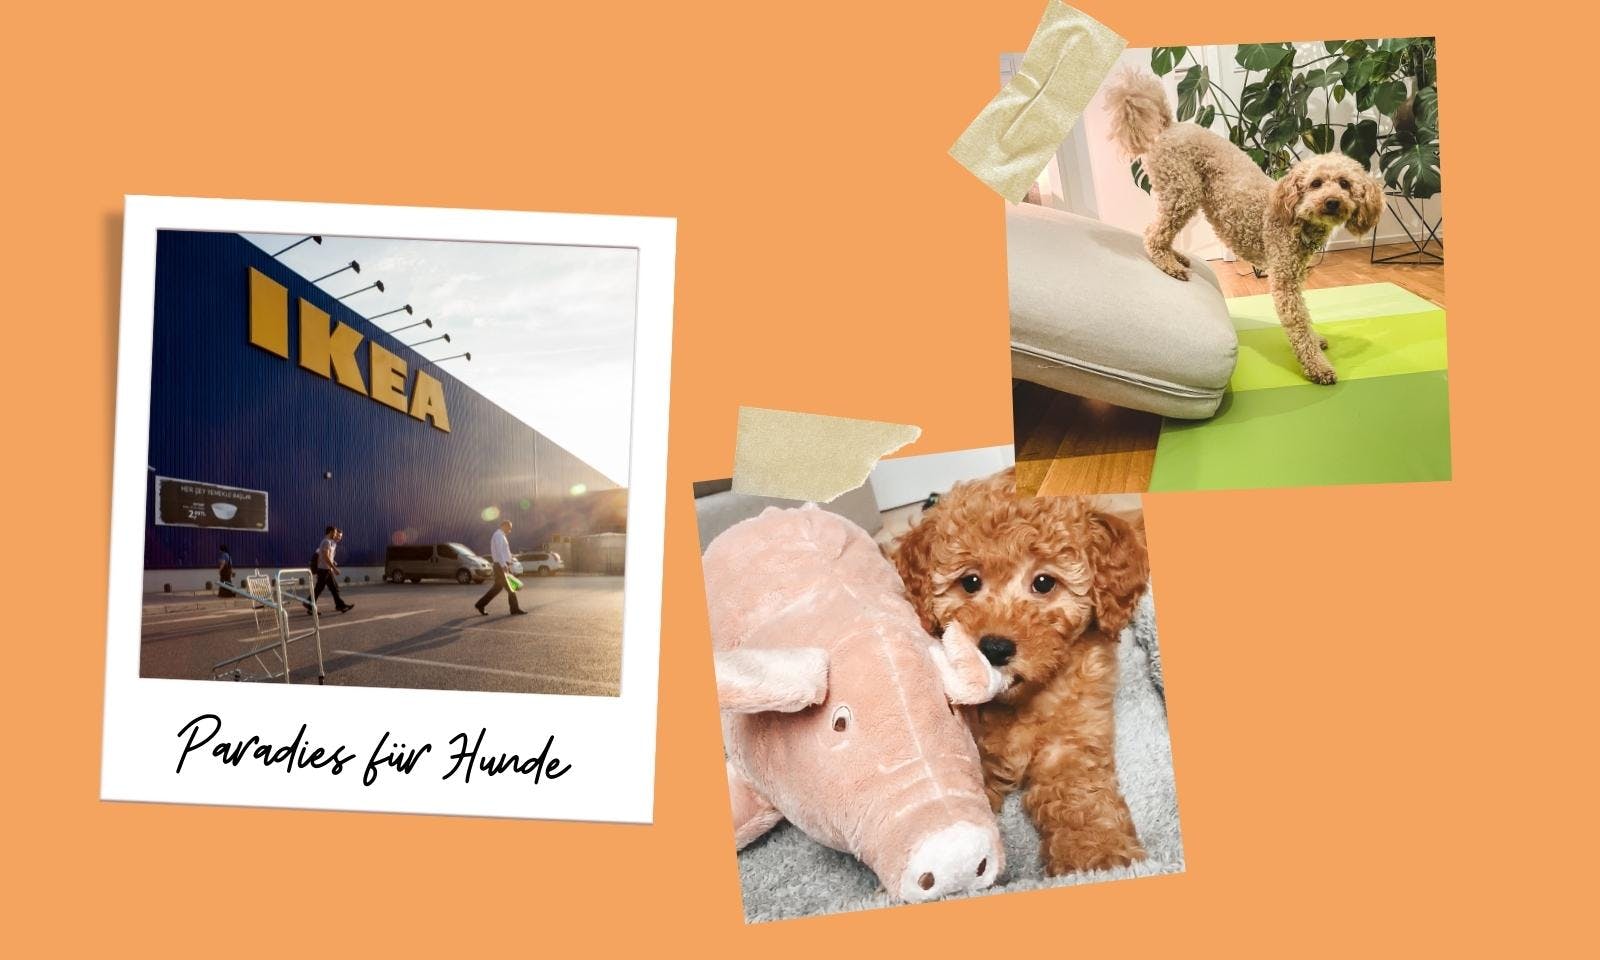 Zweckentfremdet für den Hund: 15 IKEA-Produkte fürs Hundetraining